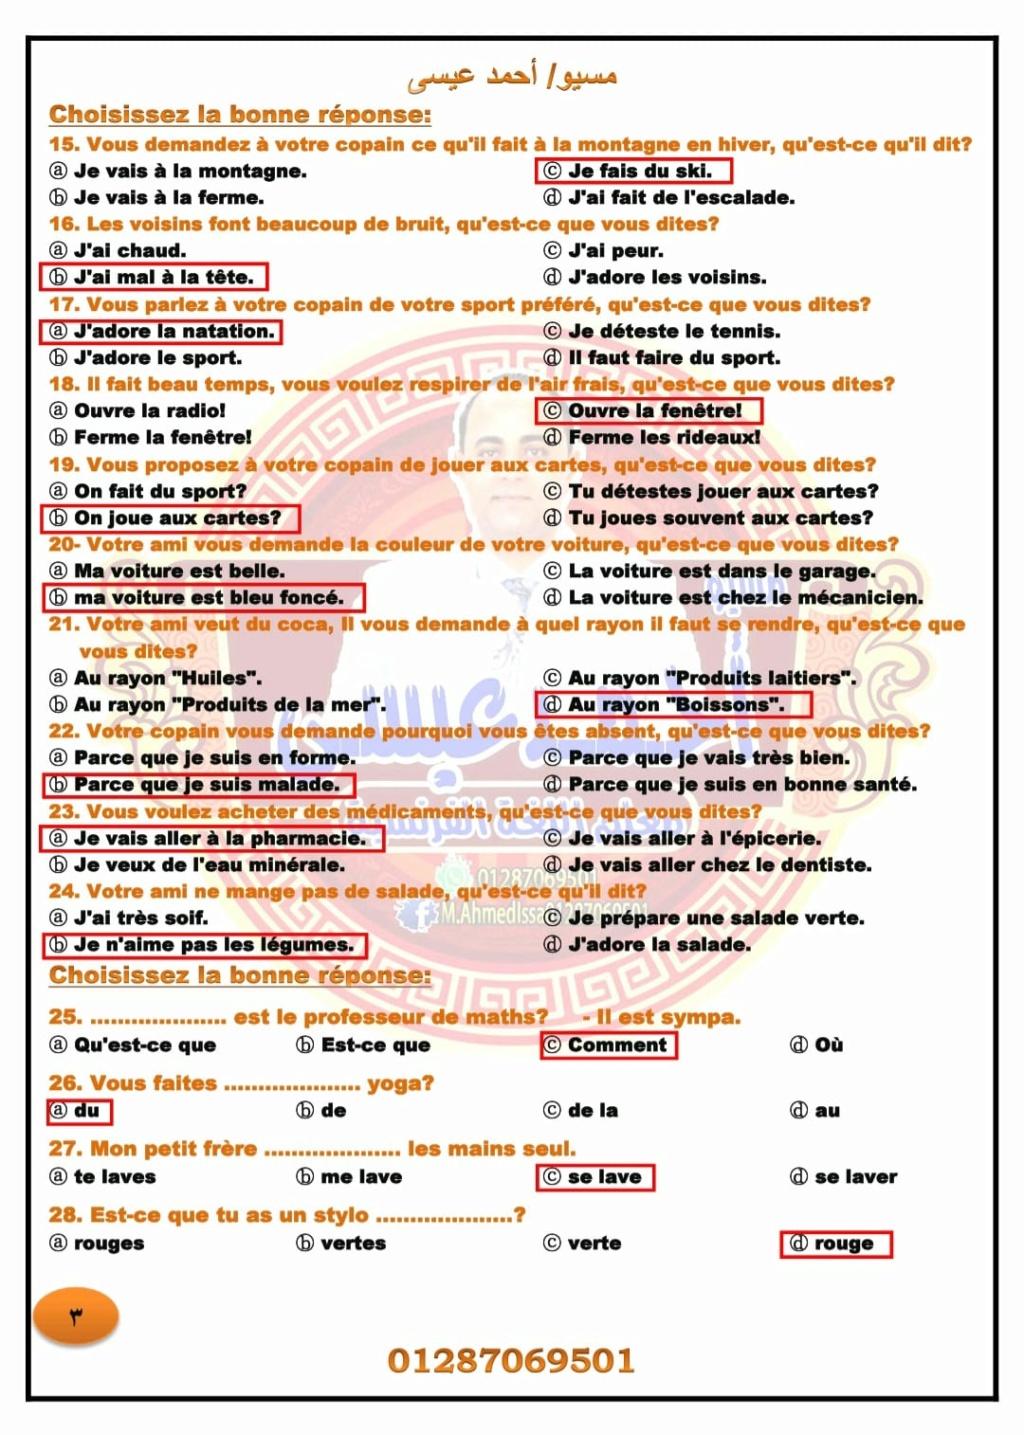  نماذج امتحان اللغة الفرنسية لتالتة ثانوى بالاجابات مسيو عمرو حجازي 3145